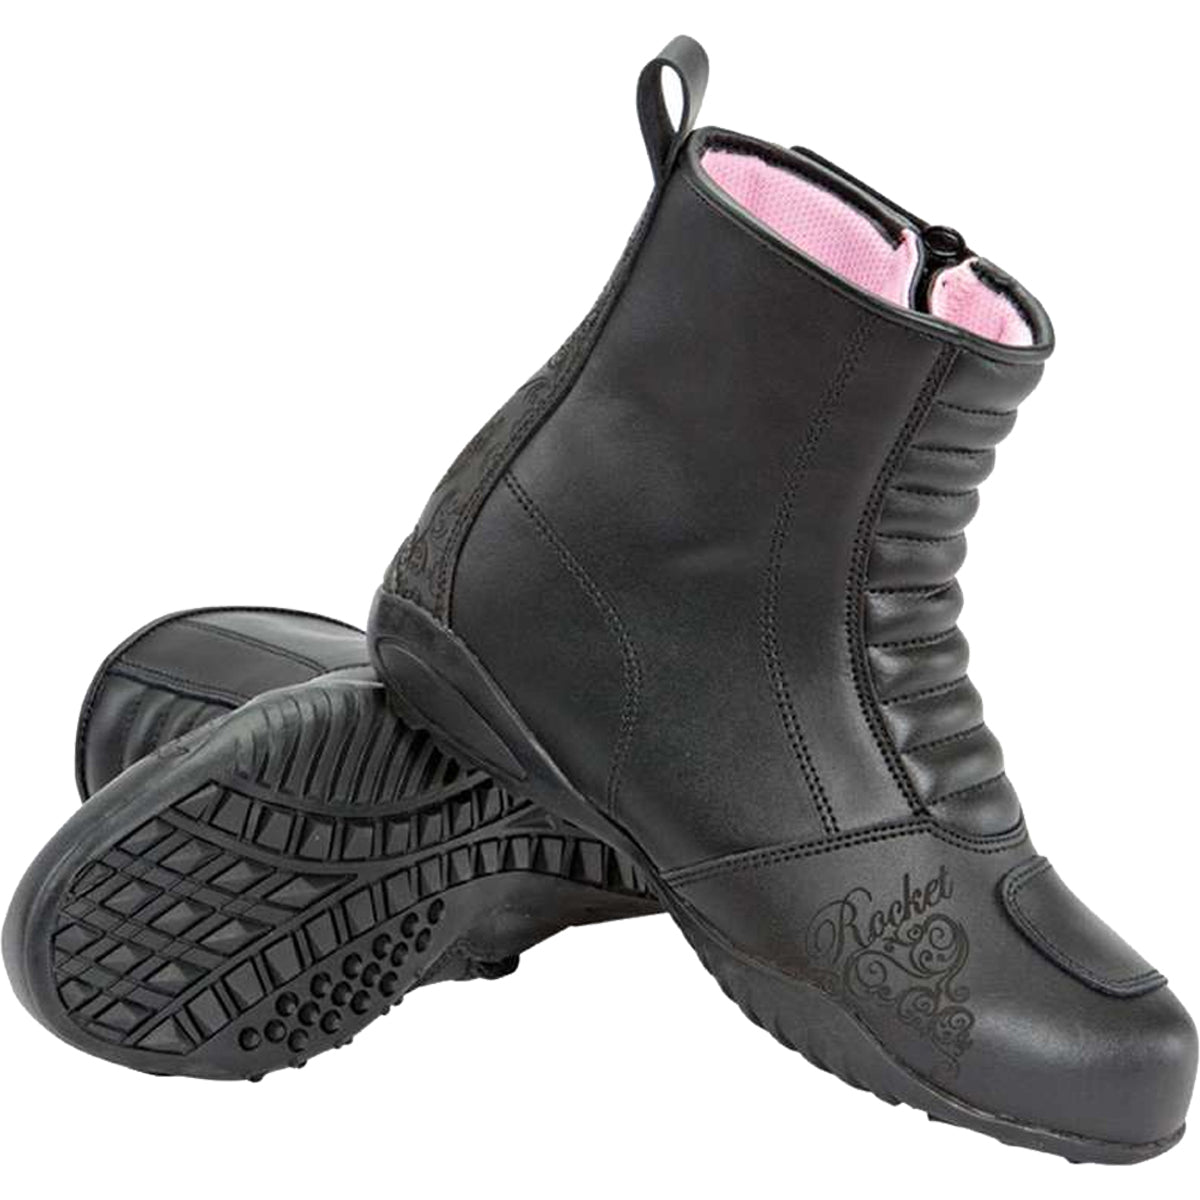 Joe Rocket Trixie Waterproof Women's Street Boots-1367